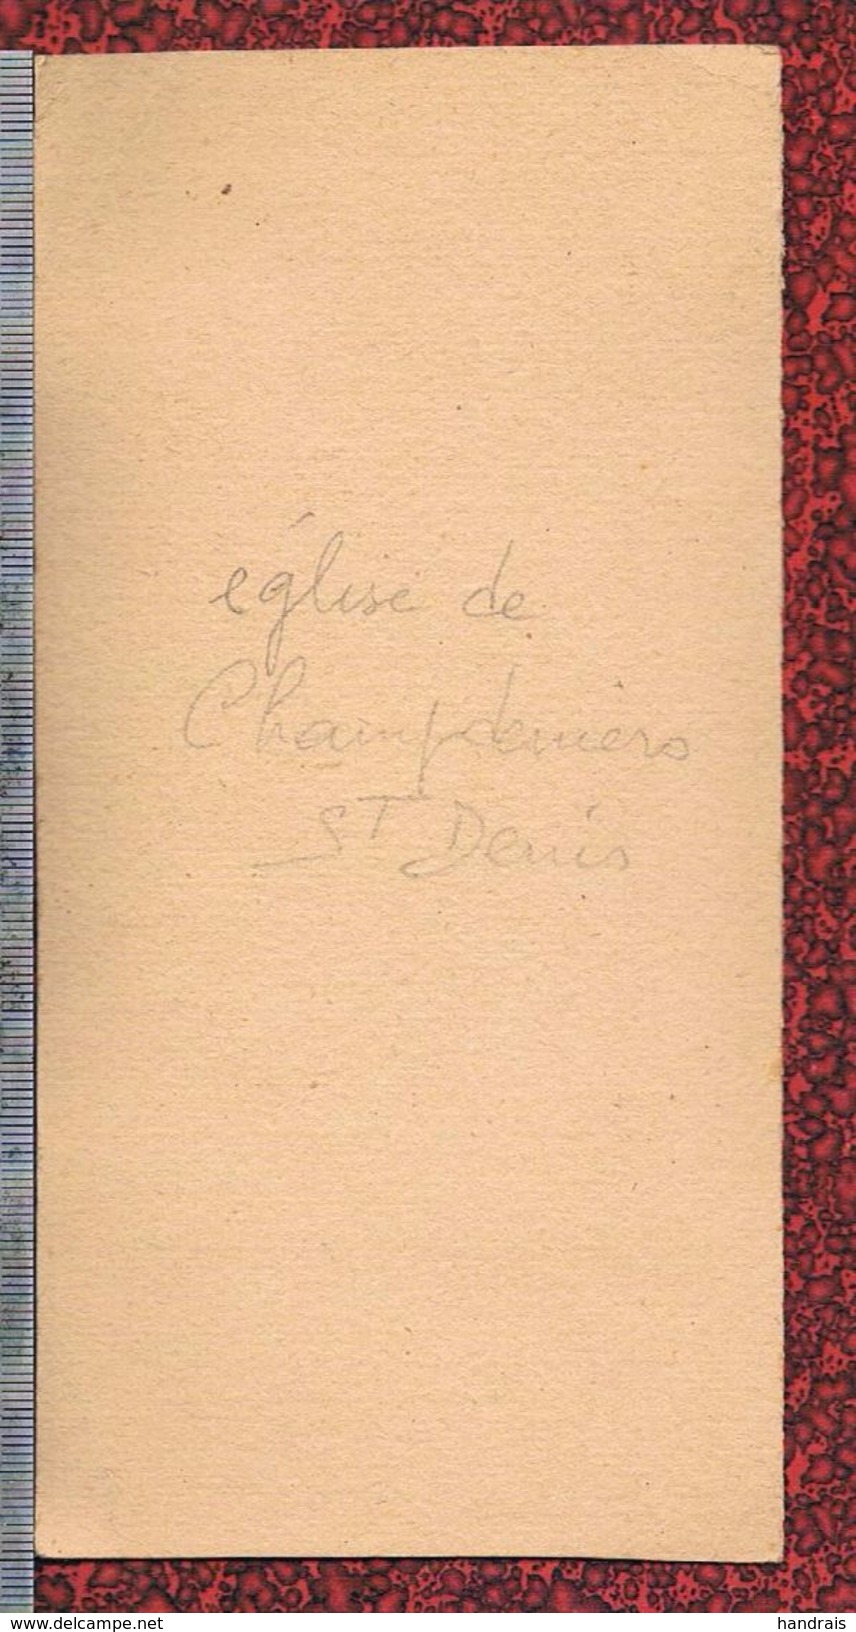 79 PHOTO  CHAMPDENIERS SAINT DENIS EGLISE INTERIEUR 1926 SAINTE THERESE DE L'ENFANT JESUS - Champdeniers Saint Denis